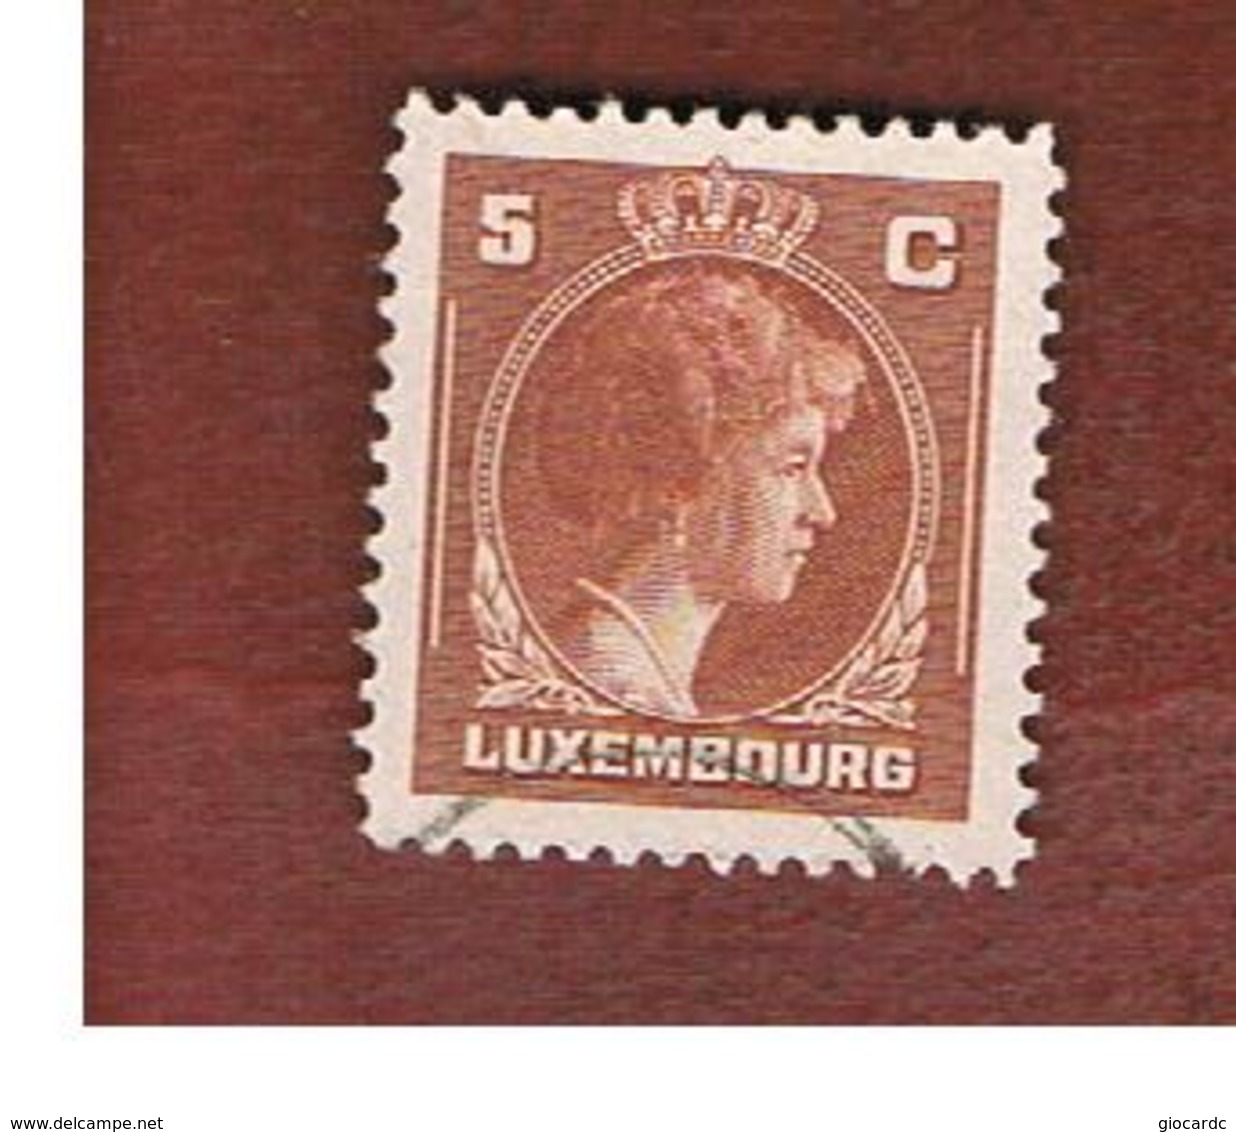 LUSSEMBURGO (LUXEMBOURG)   -   SG  438    -   1944 GRAND DUCHESS  CHARLOTTE  5   -   USED - 1944 Charlotte De Profil à Droite